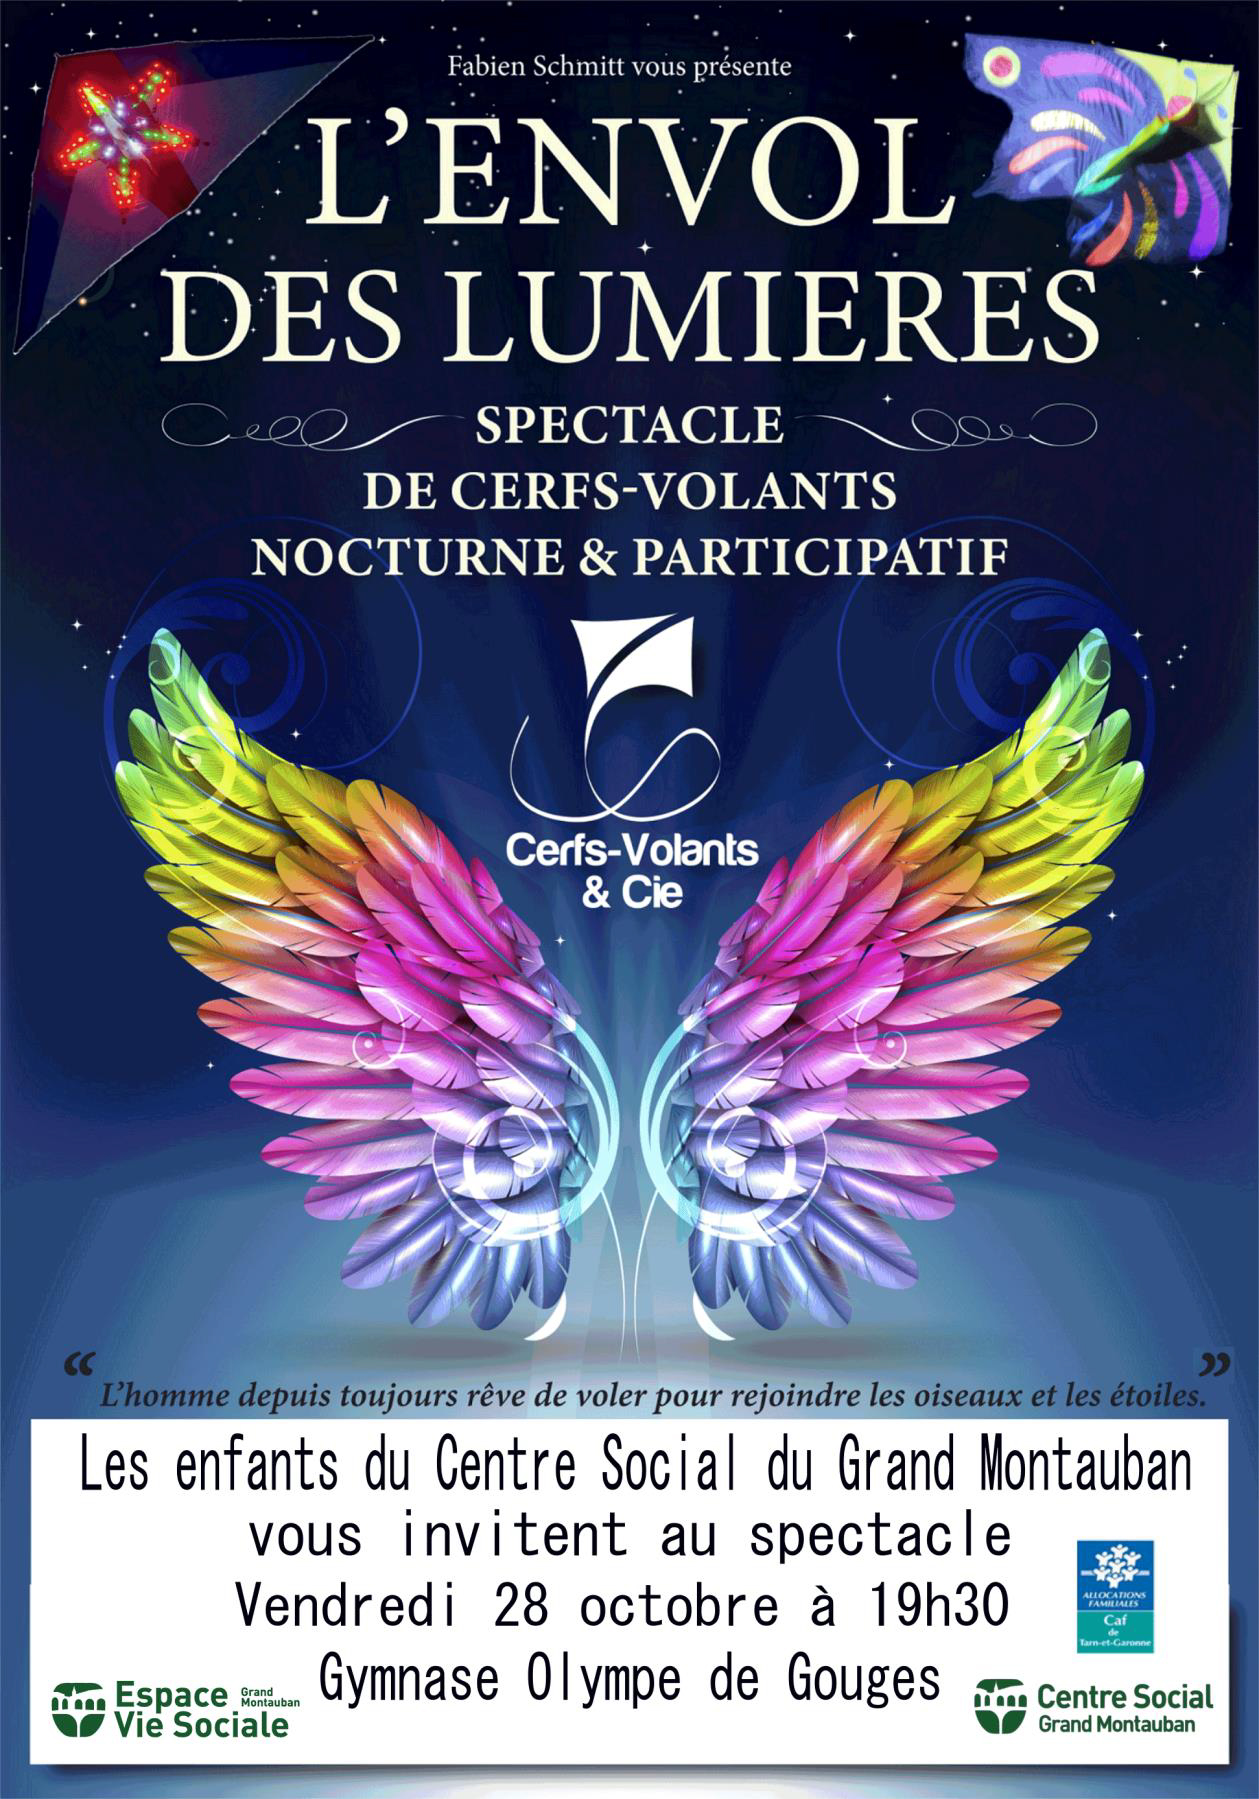 Le centre social de Montauban vous convie au spectacle « L’envol des lumières » 